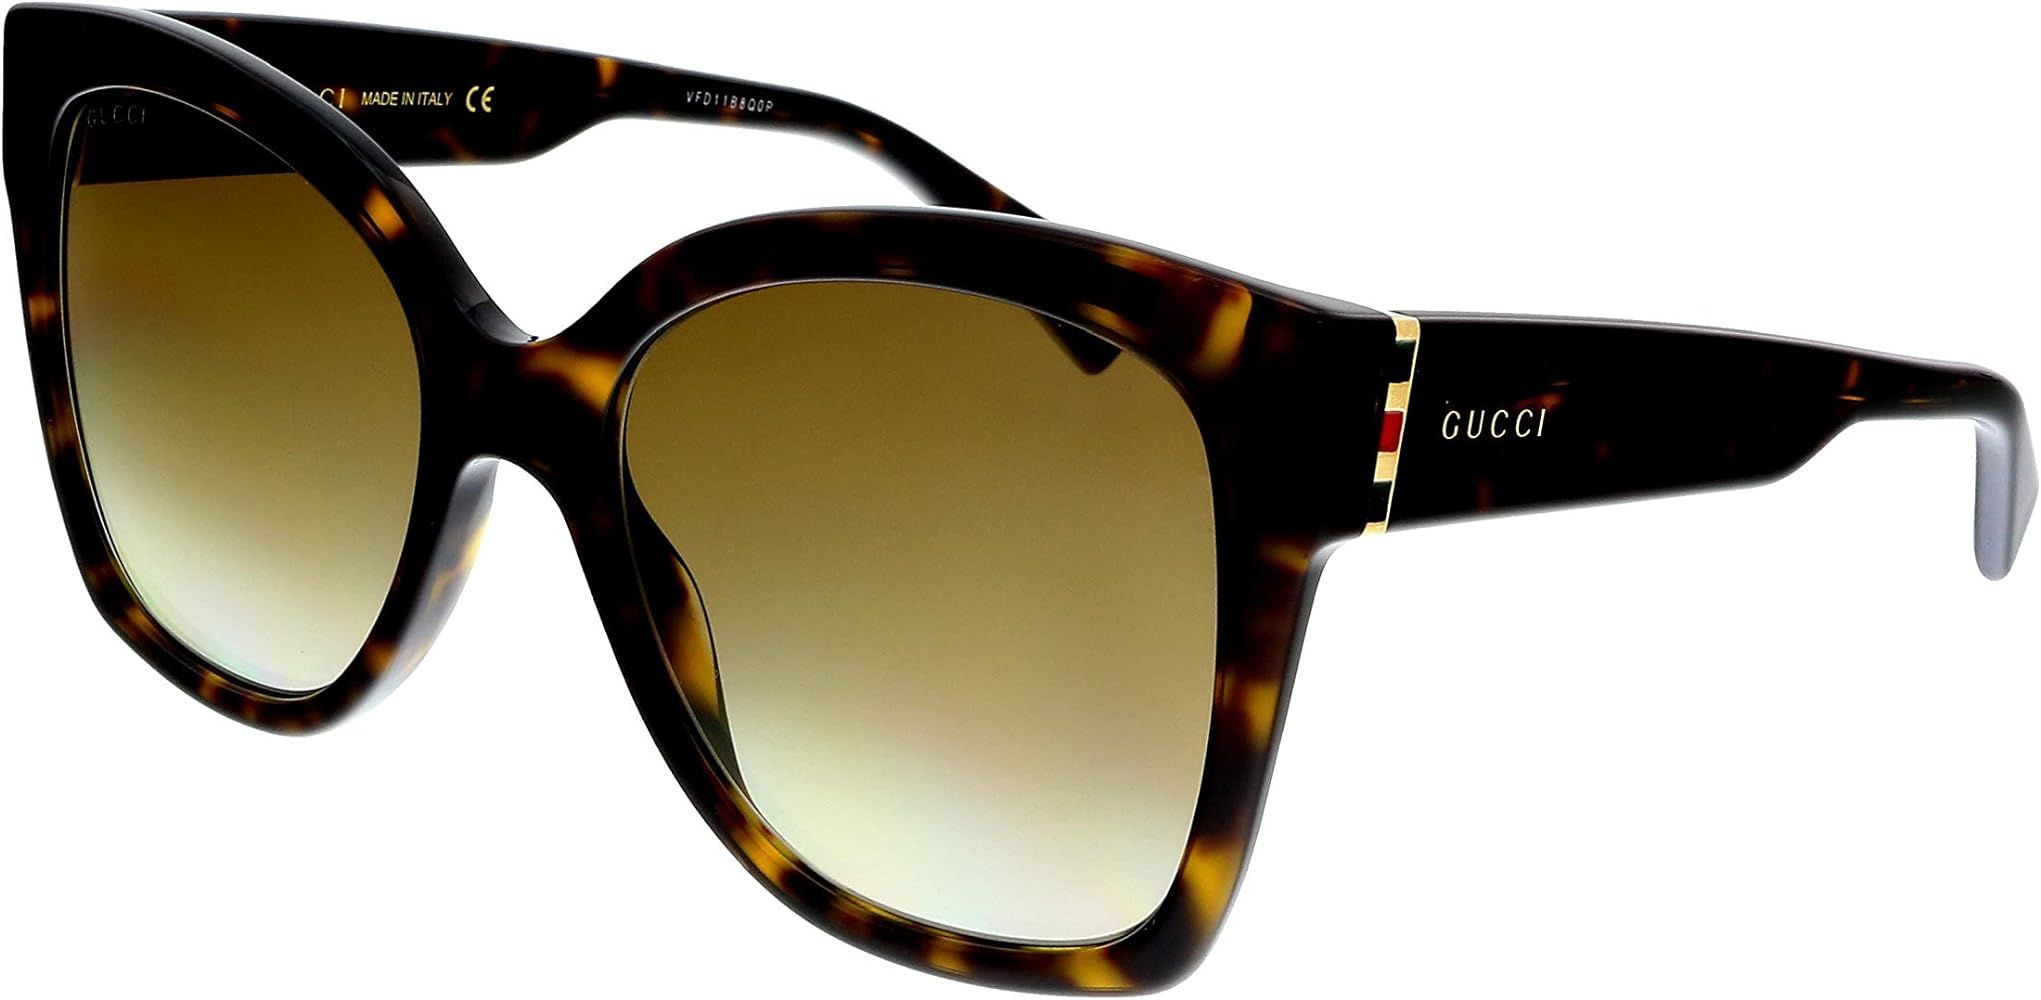 Gucci sunglasses (GG-0459-S 002) - lenses | Amazon (US)